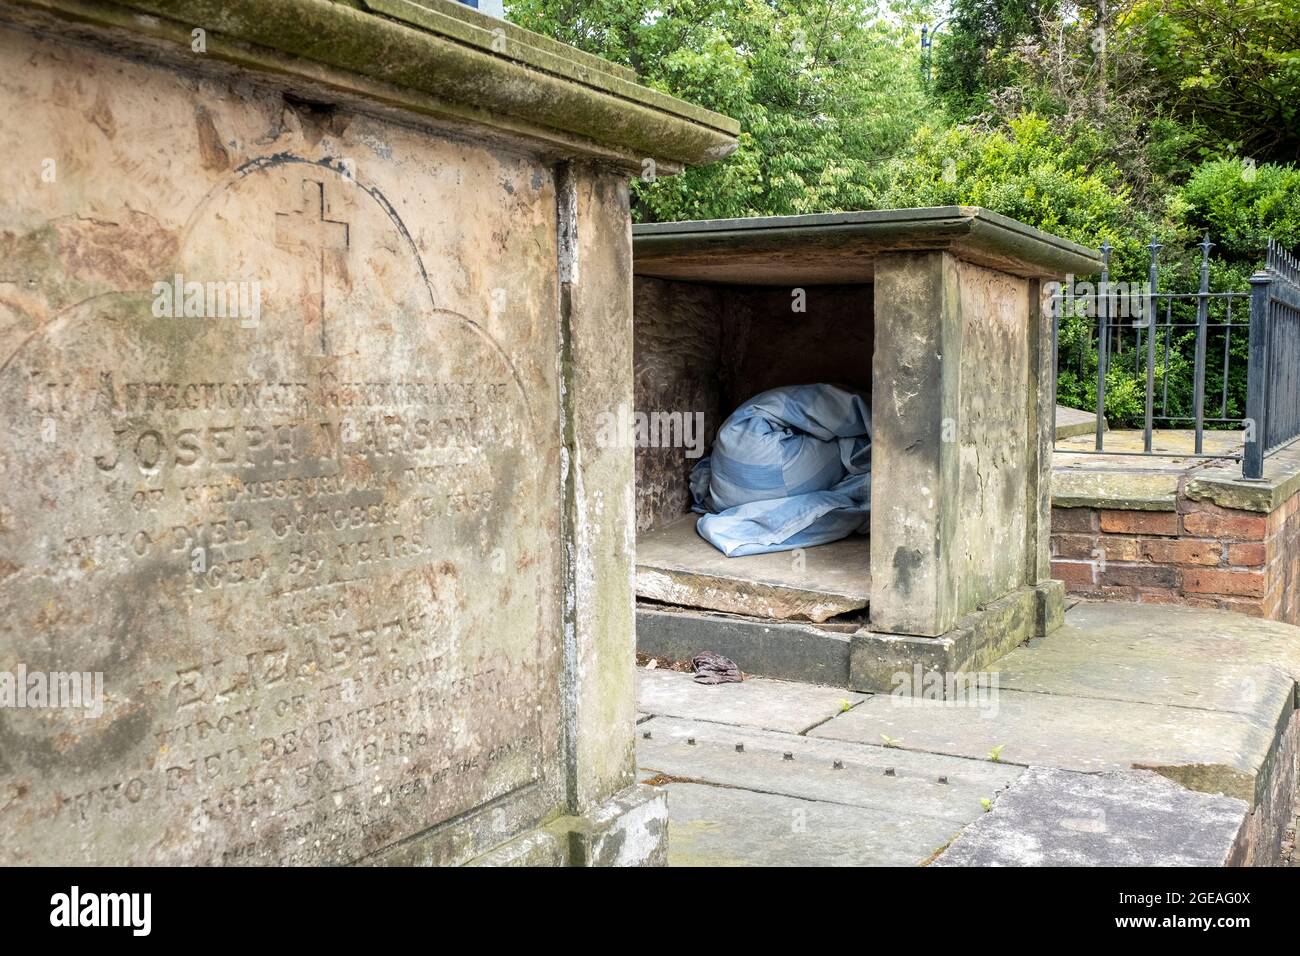 Le canapé-lit laisse une couette dans une tombe cassée, Bilston, West midlands UK. Banque D'Images